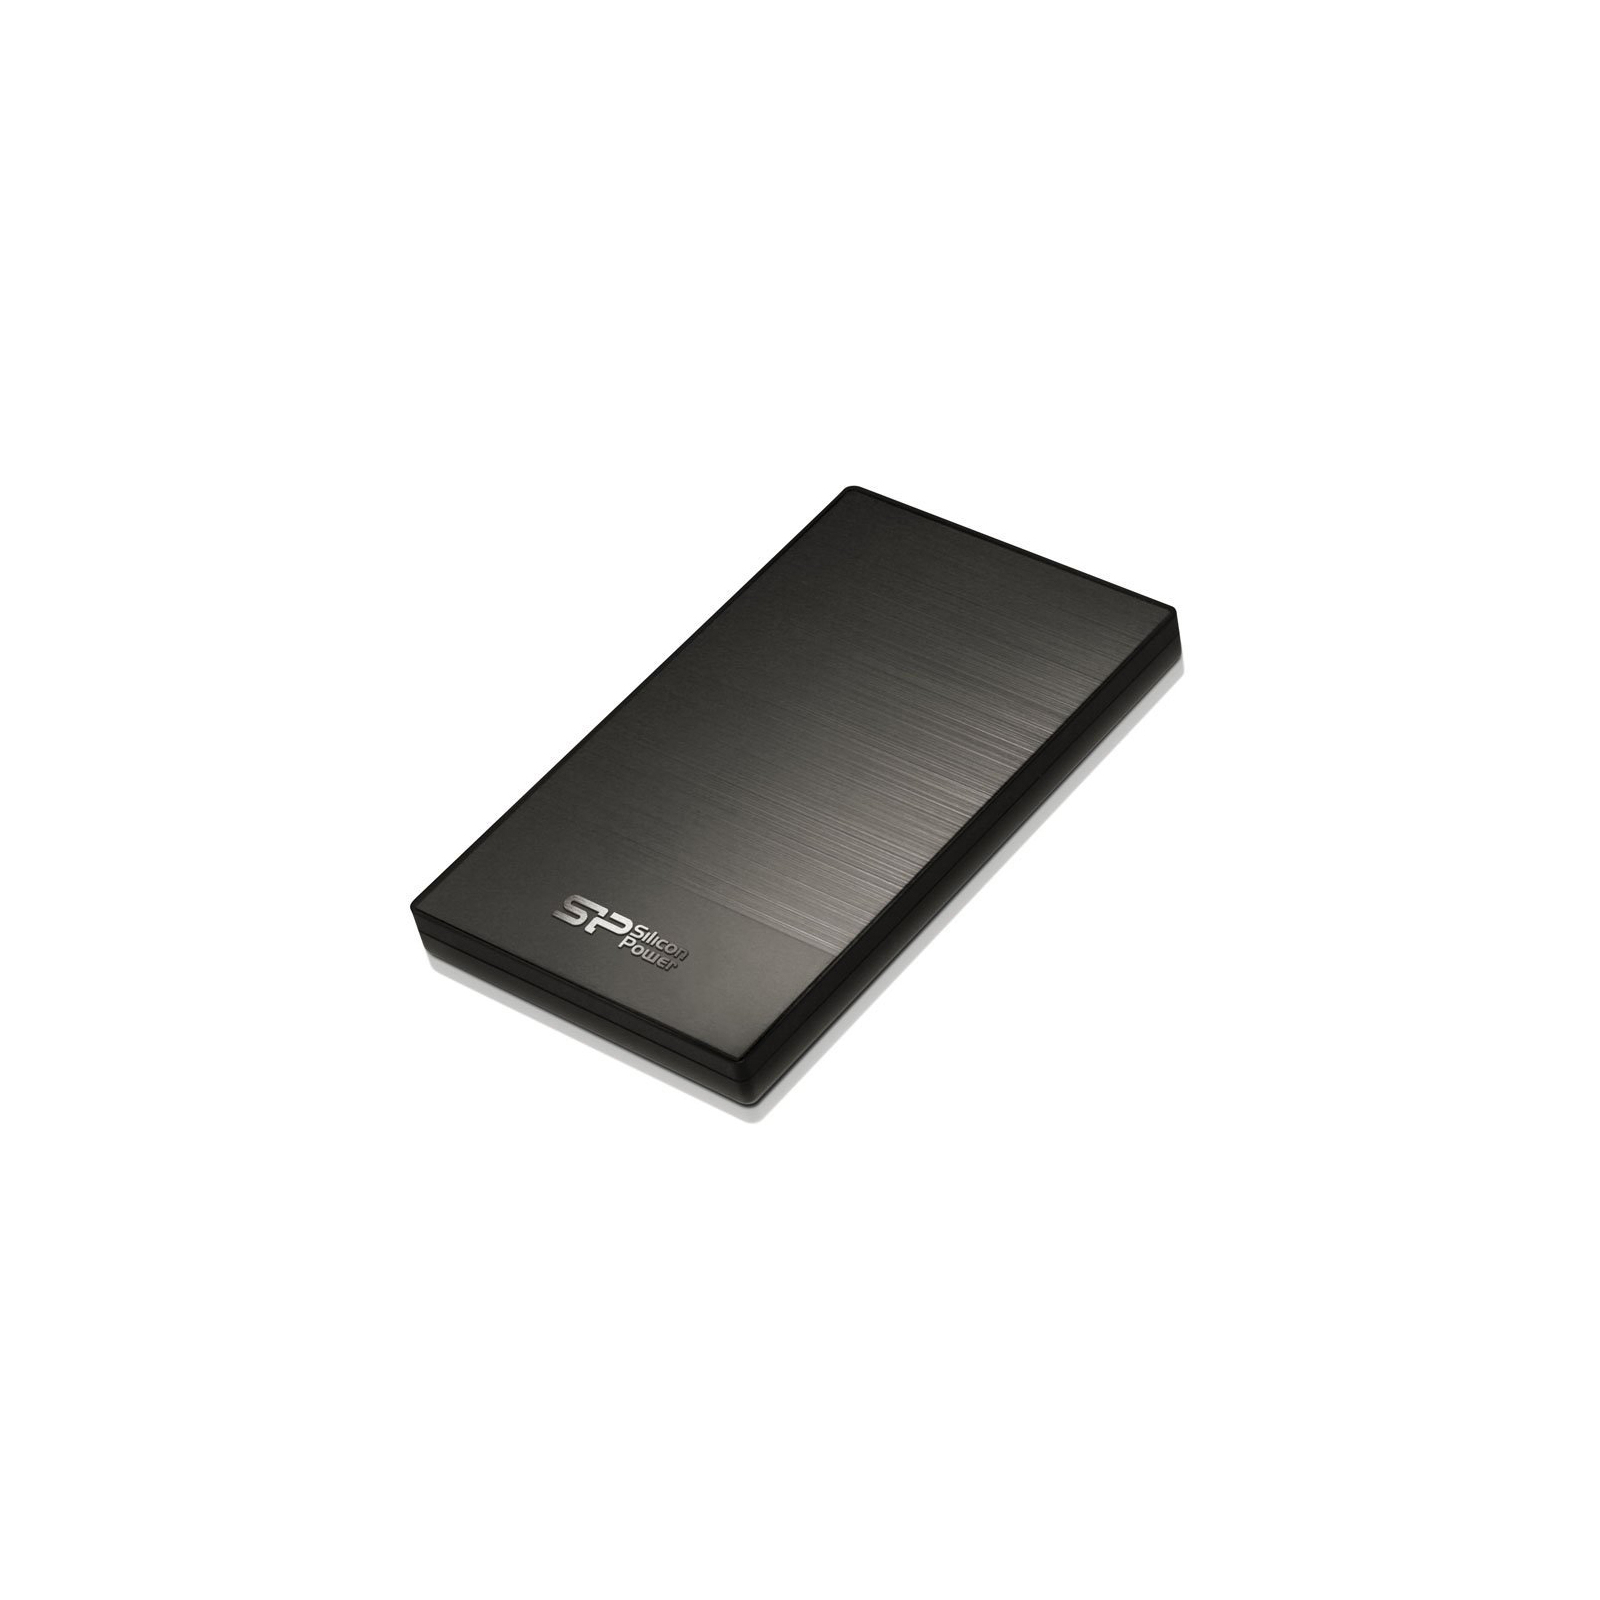 Зовнішній жорсткий диск Silicon Power 2.5" 1TB (SP010TBPHDD05S3T) зображення 2